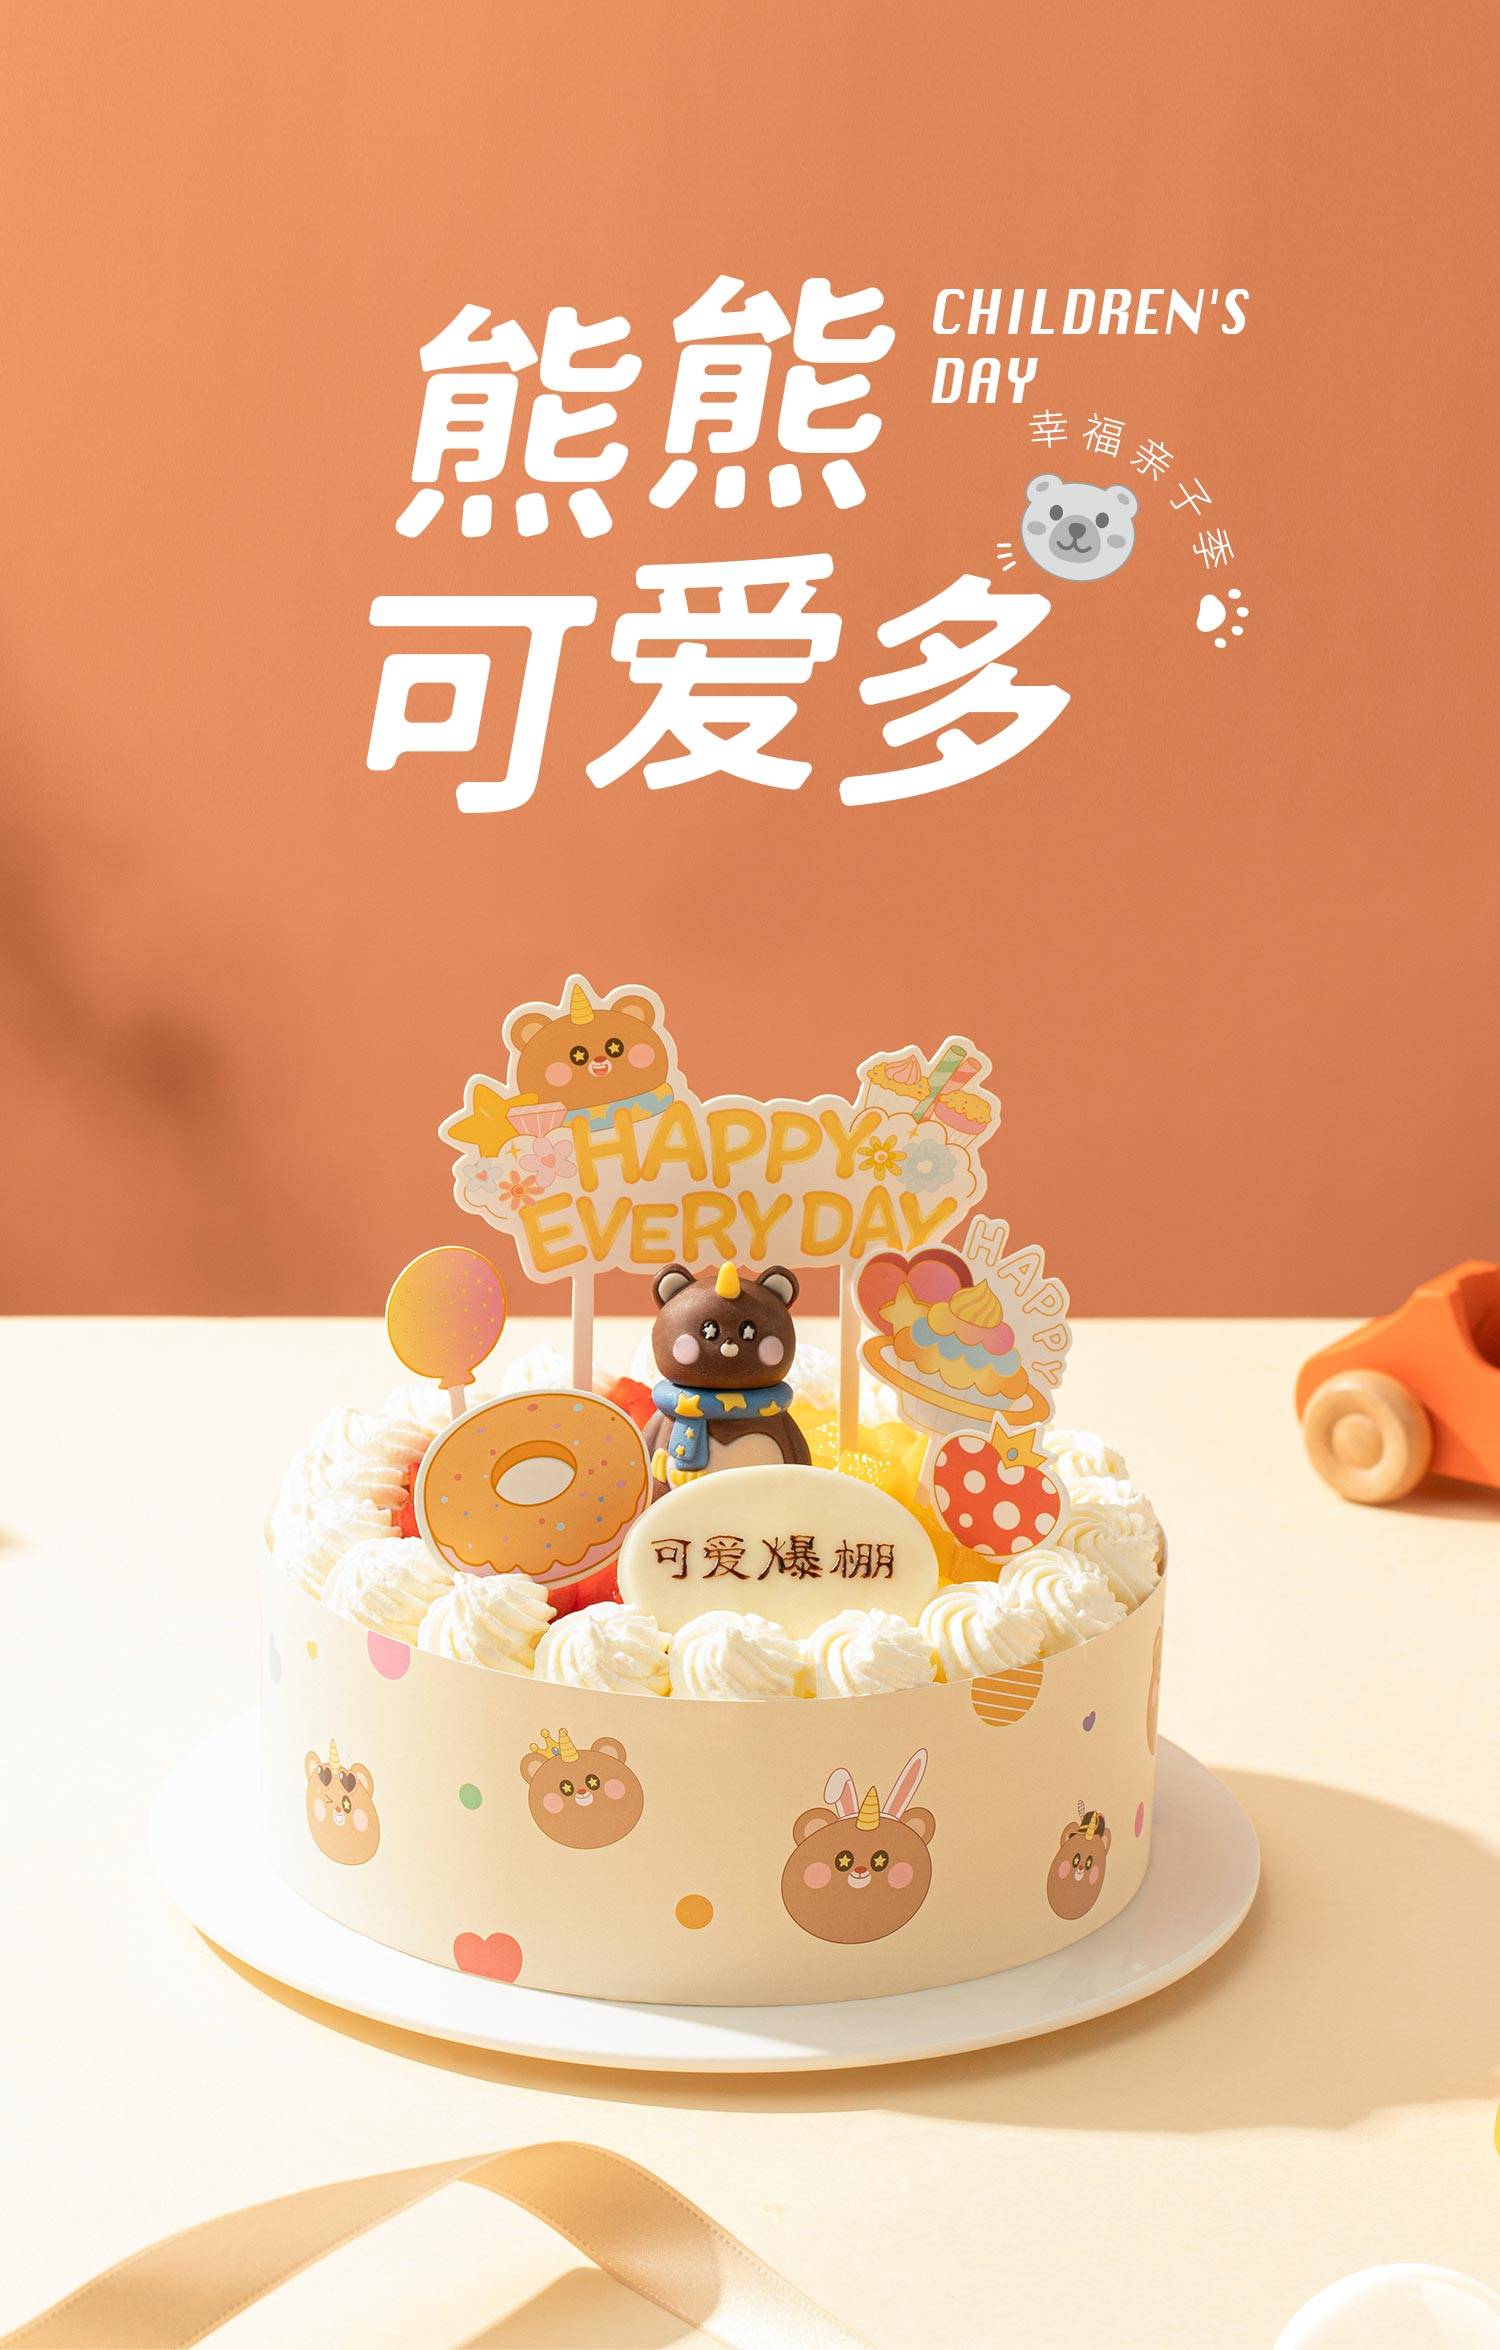 温馨小屋: 又一个小熊的生日蛋糕 - Chocolate Fudge Cake